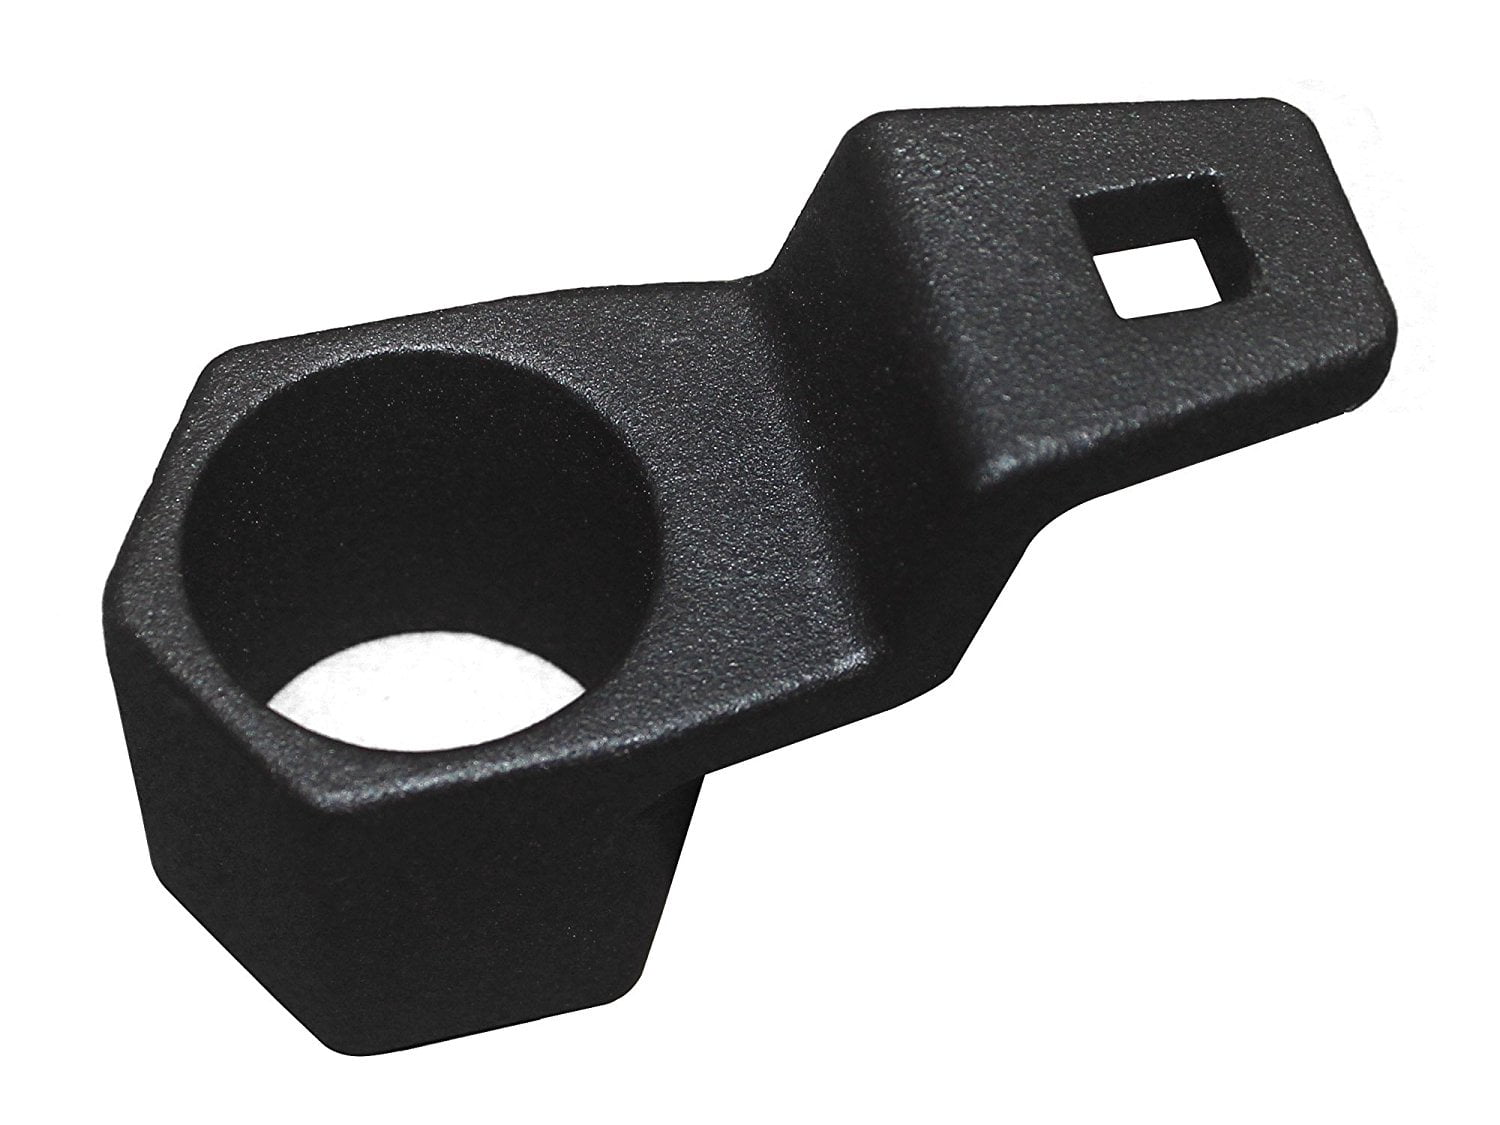 50 mm crank spanner holder car crankshaft wrench crank pulley holding key socket tool damper removal tool 